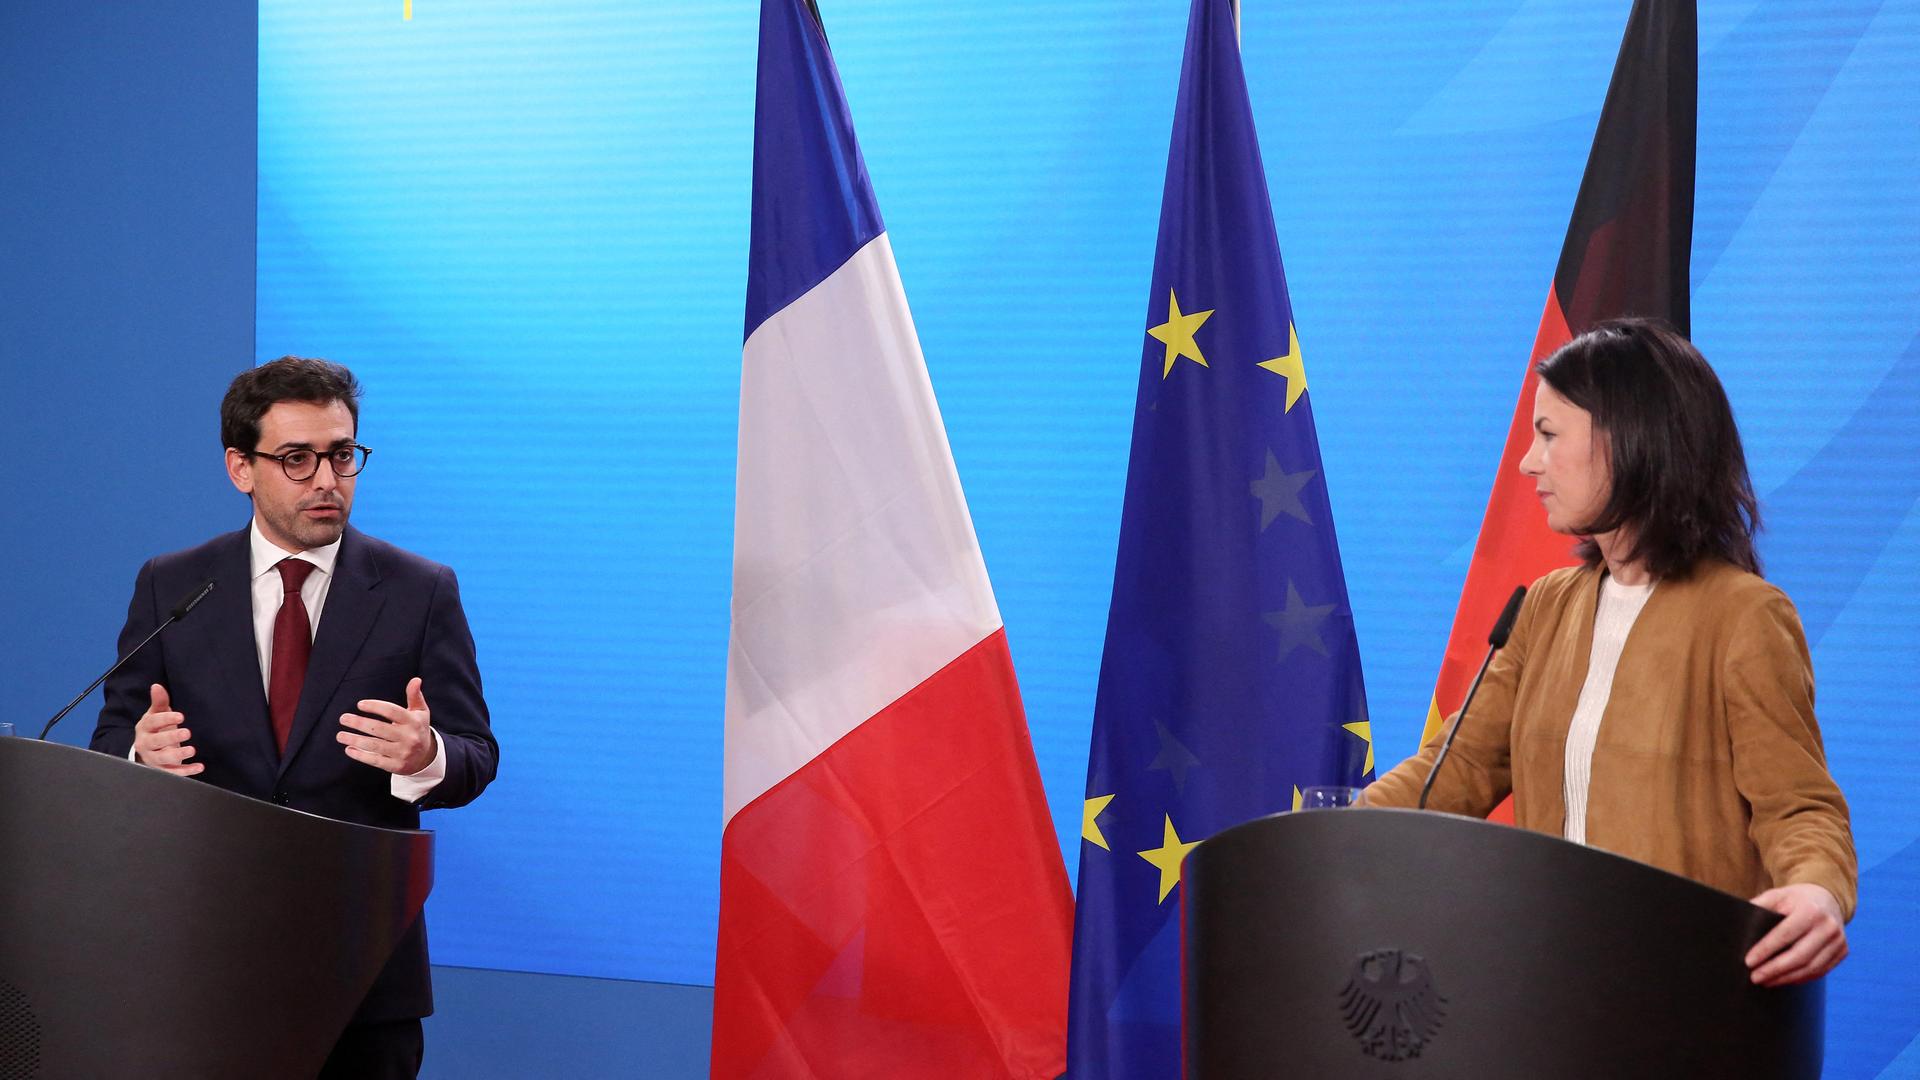 Séjourné und Baerbock stehen an Rednerpulten, im Hintergrund die Flaggen Frankreichs, Deutschlands und der Europäischen Union.